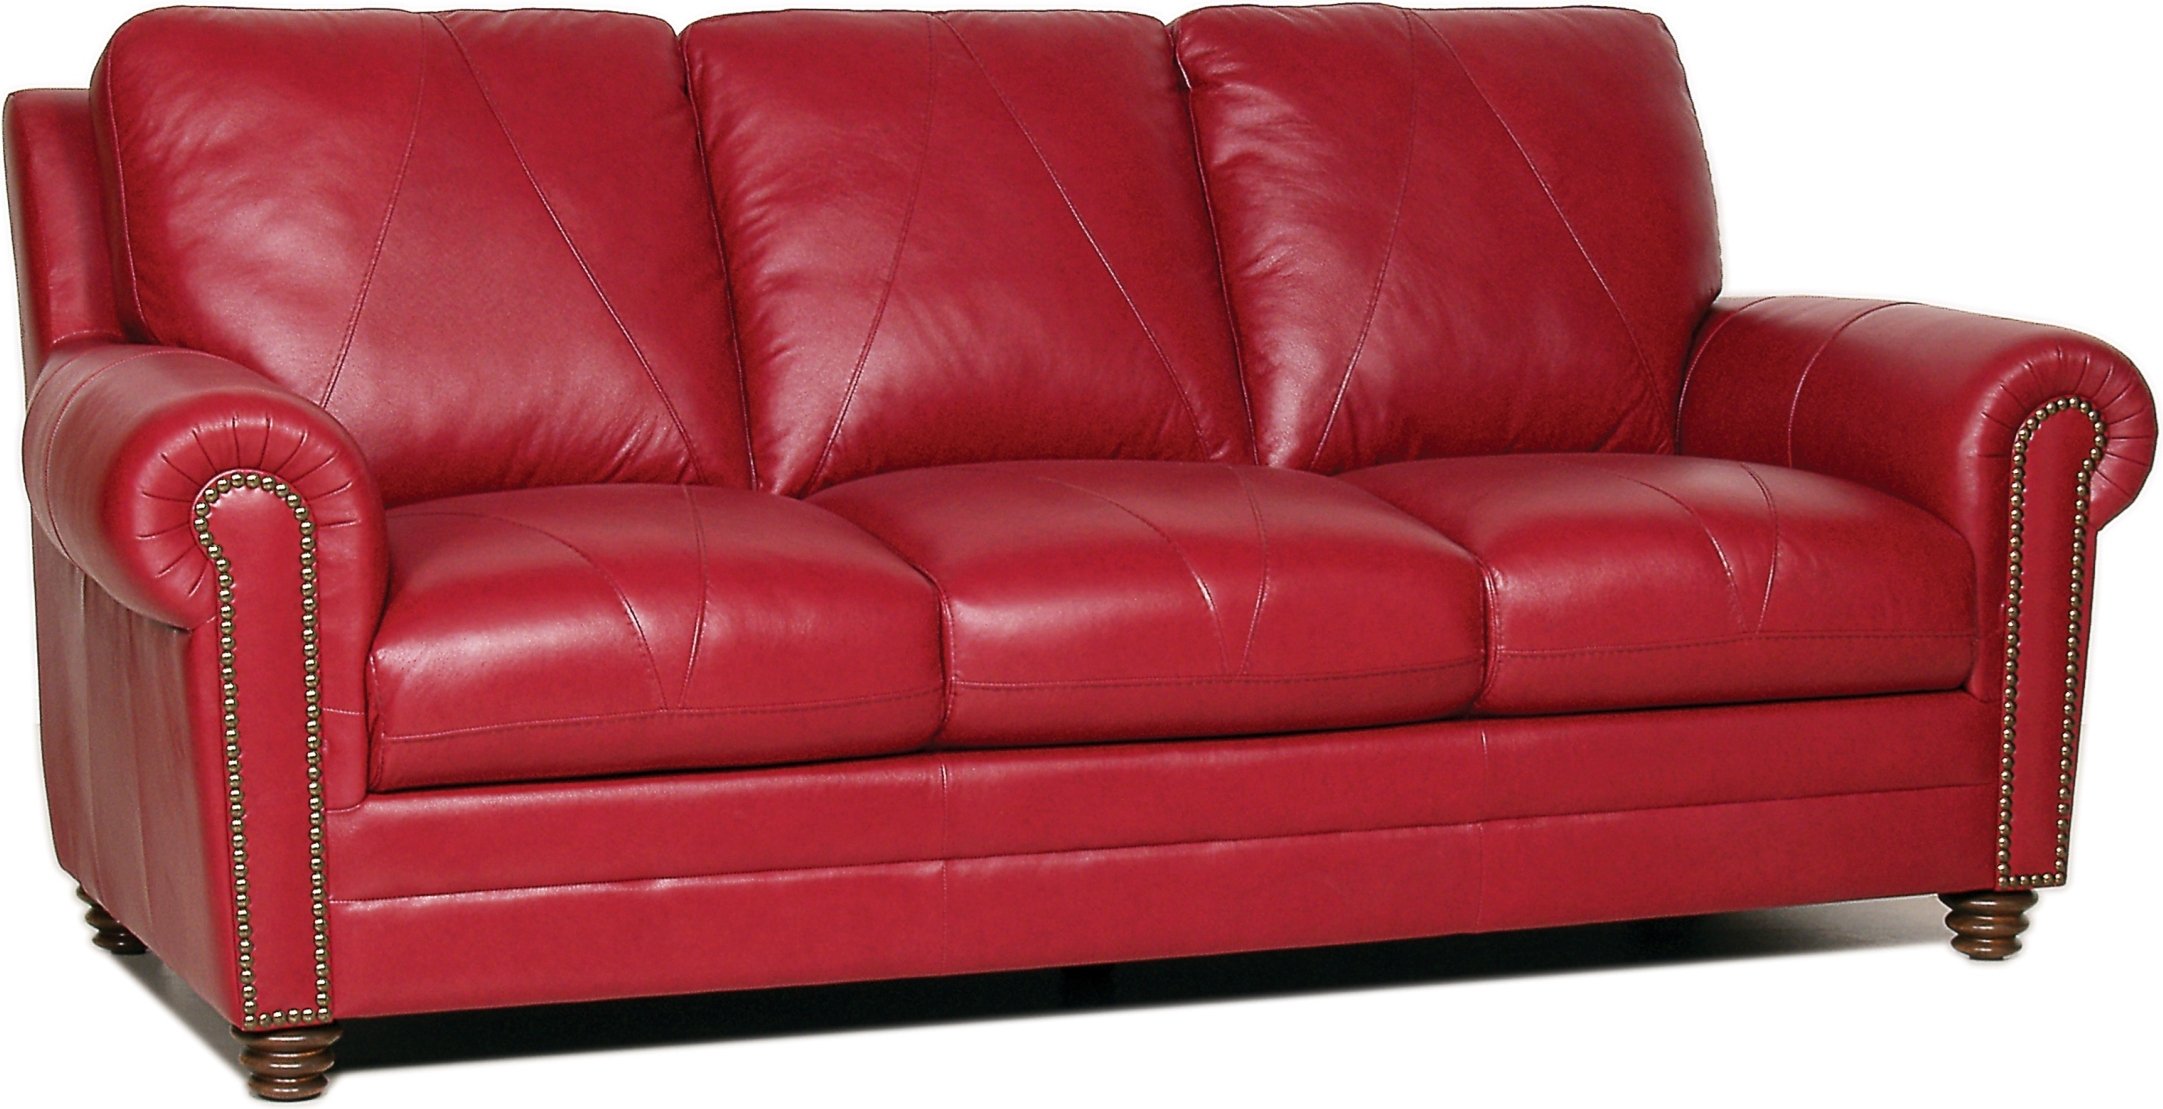 reviews of italian leather sofa conditioner repair